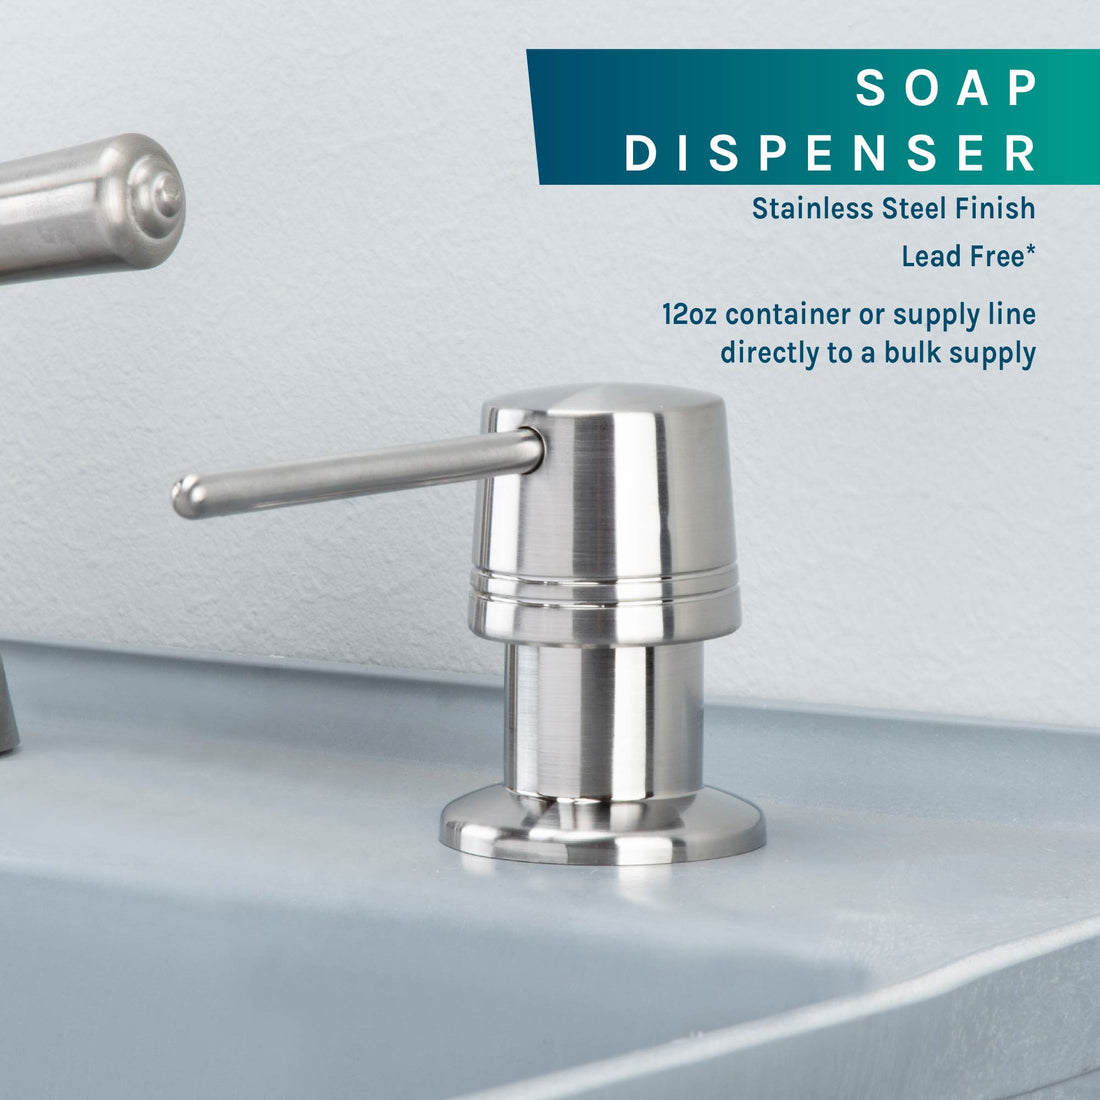 Laundry Tub Soap Dispenser (Stainless Steel Finish) - Utility sinks vanites Tehila